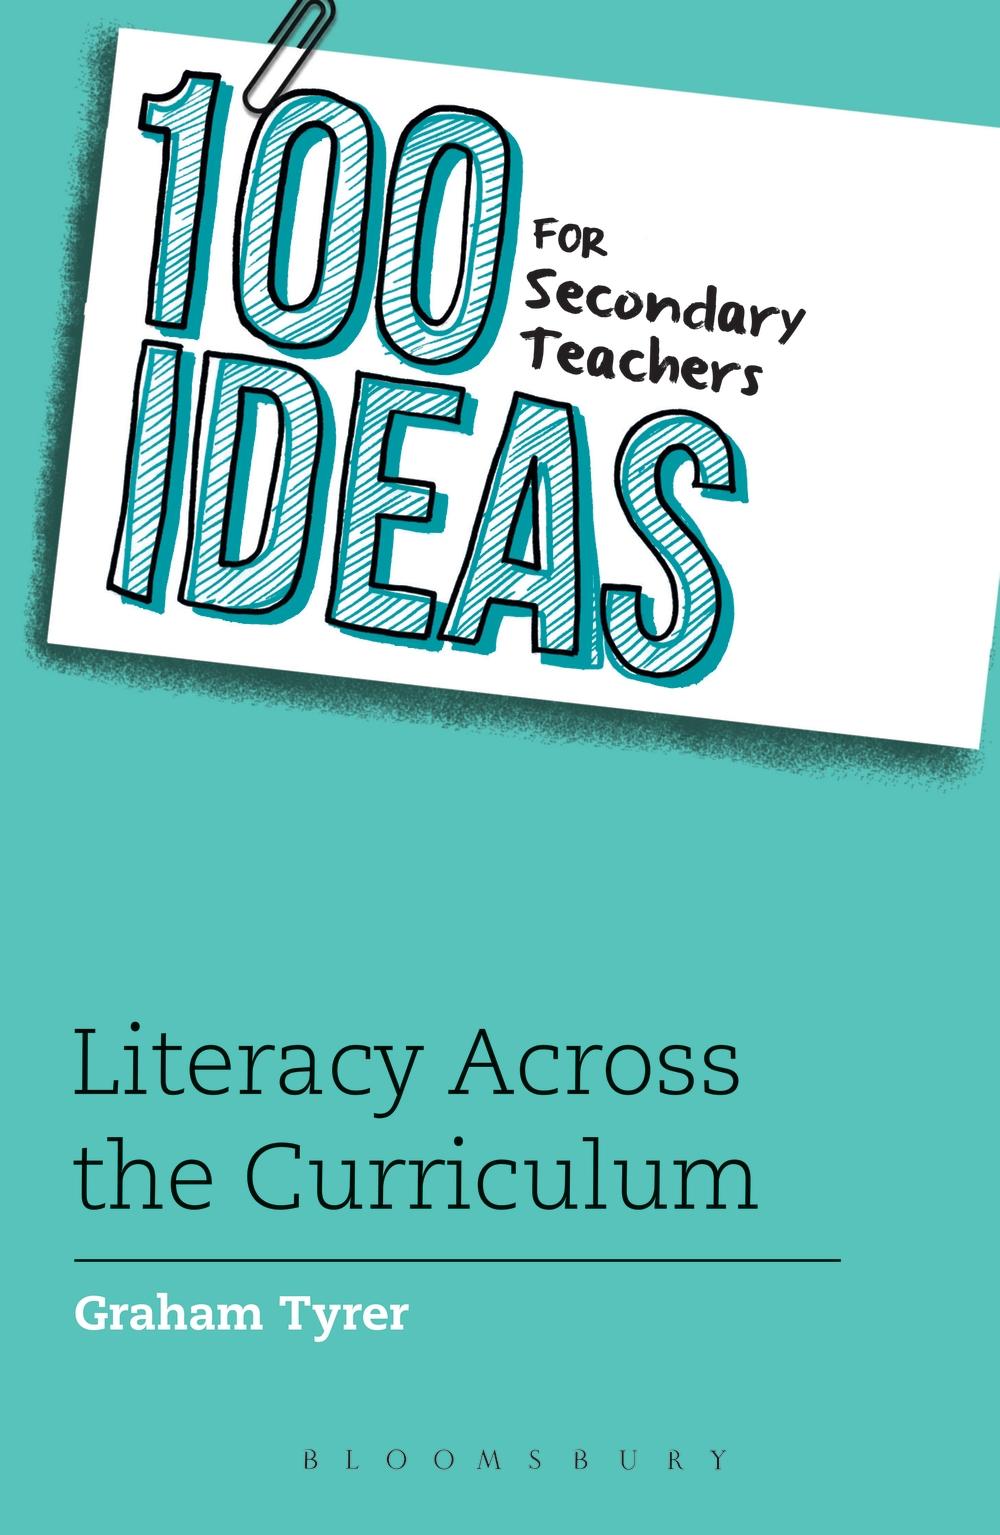 100 Ideas for Secondary Teachers: Literacy Across the Curric